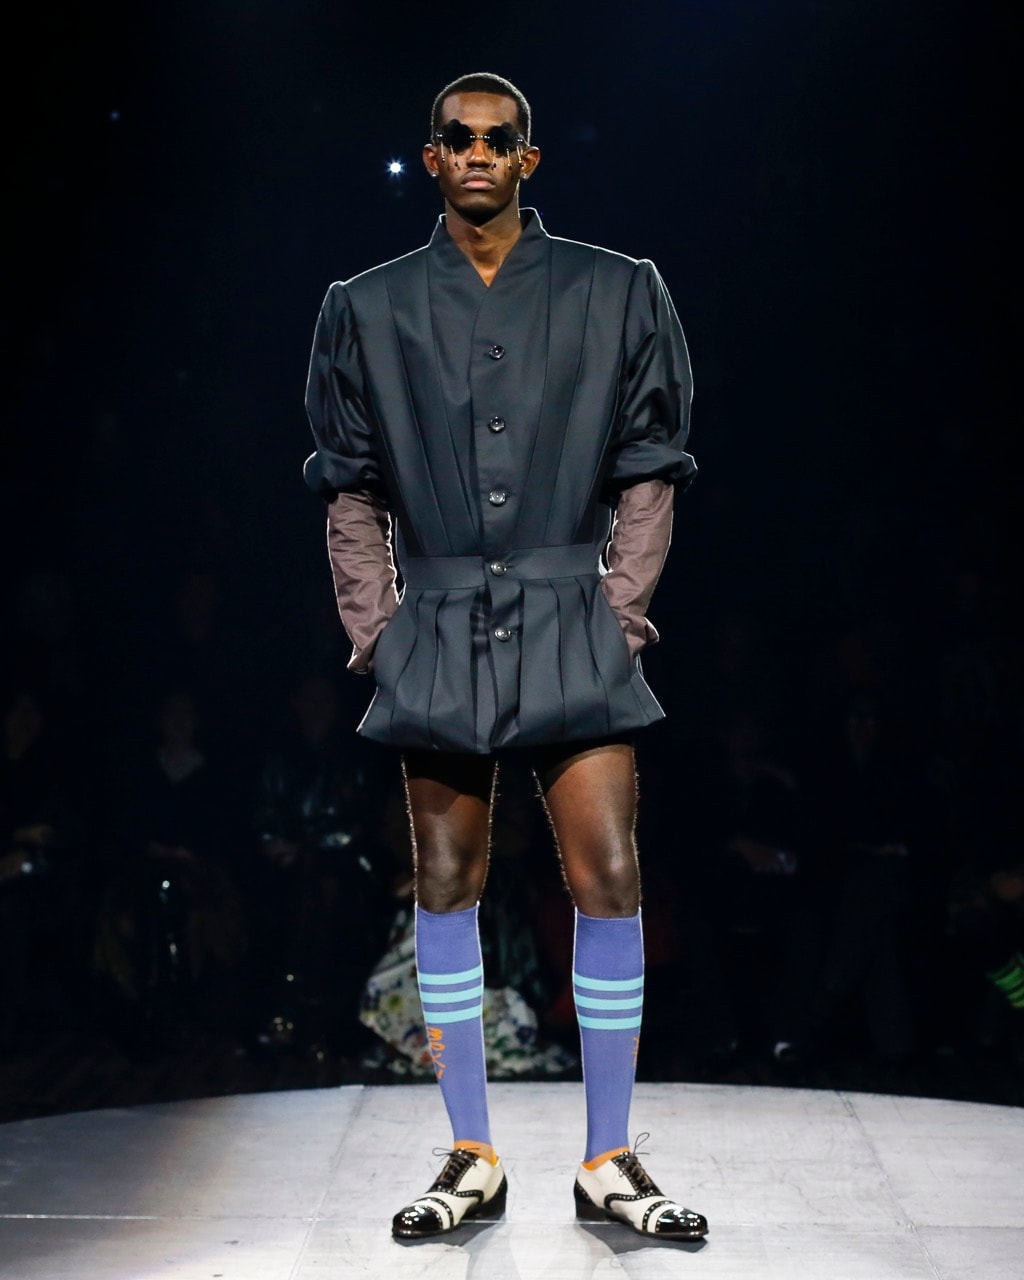 andreas kronthaler vivienne westwood paris fashion week runway show